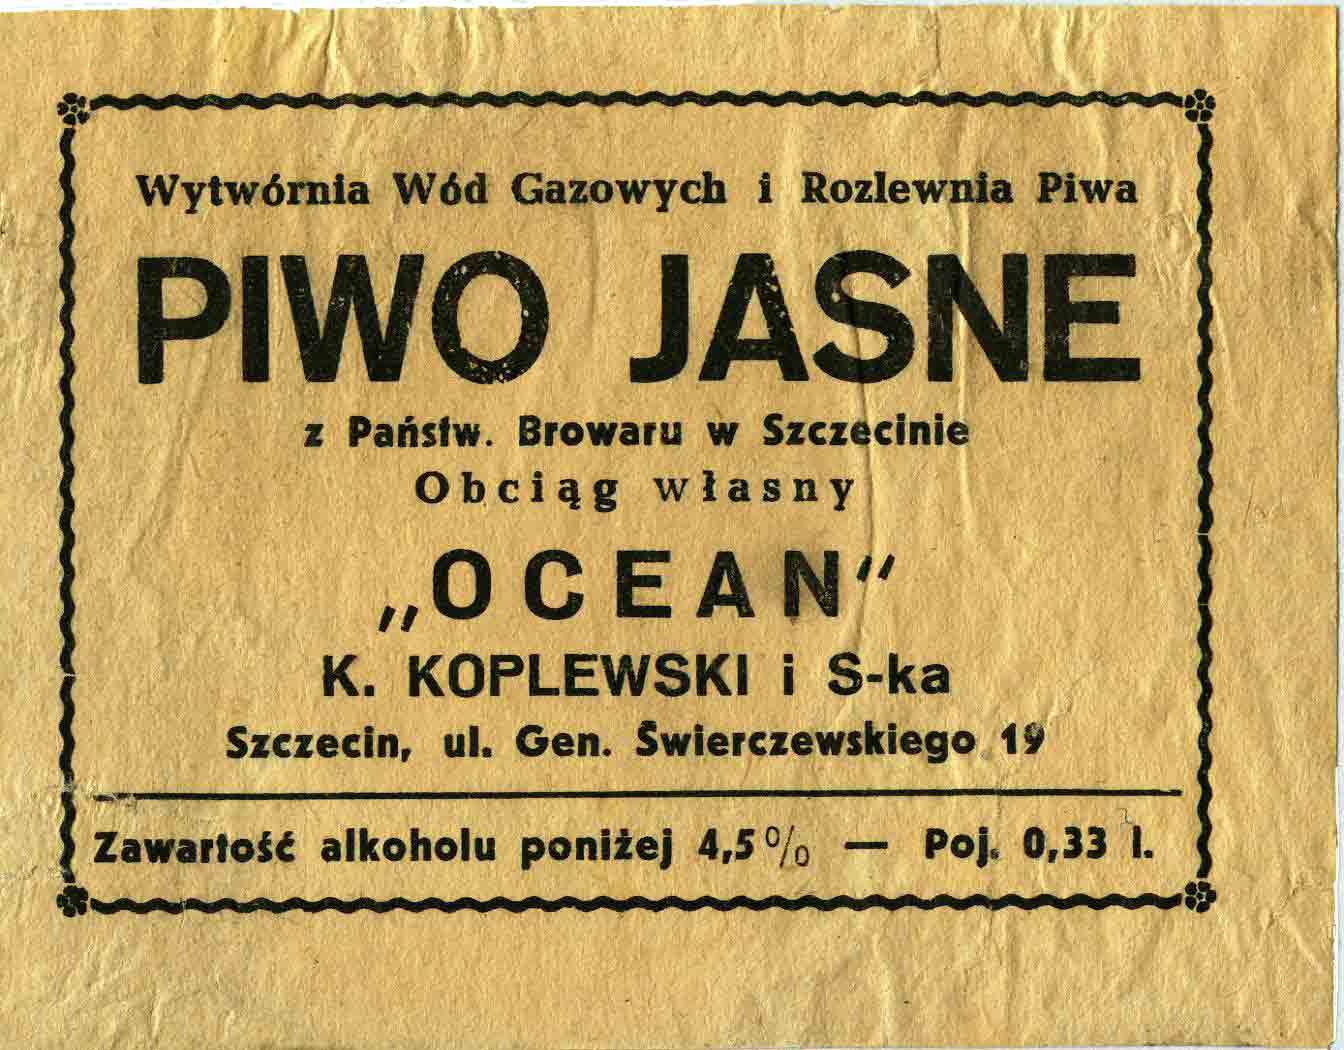 WWG i RP "OCEAN" 
K. Koplewski i S-ka. Szczecin